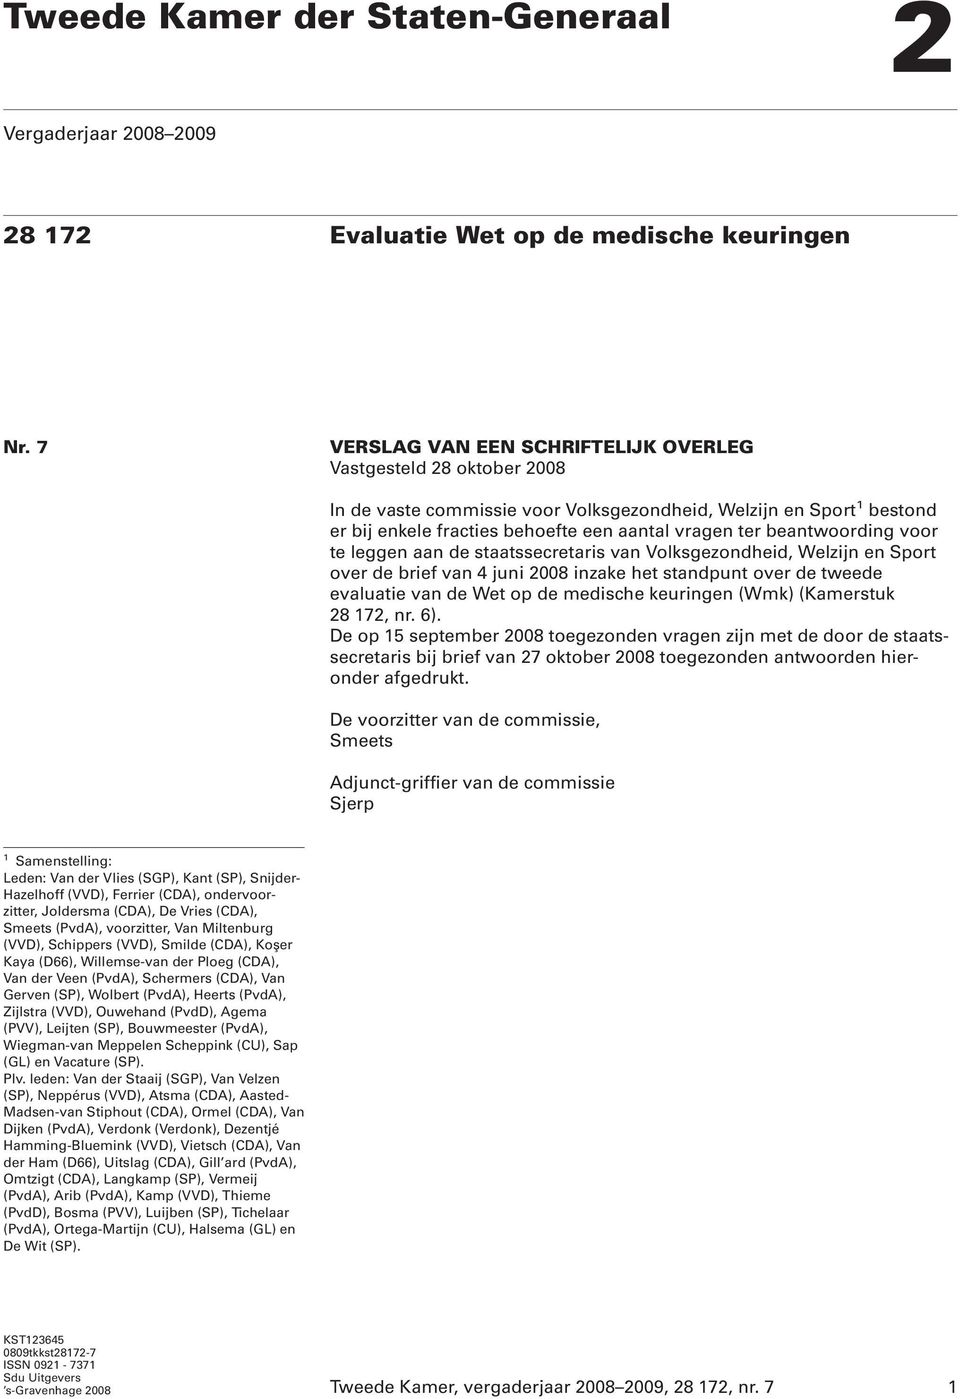 beantwoording voor te leggen aan de staatssecretaris van Volksgezondheid, Welzijn en Sport over de brief van 4 juni 2008 inzake het standpunt over de tweede evaluatie van de Wet op de medische